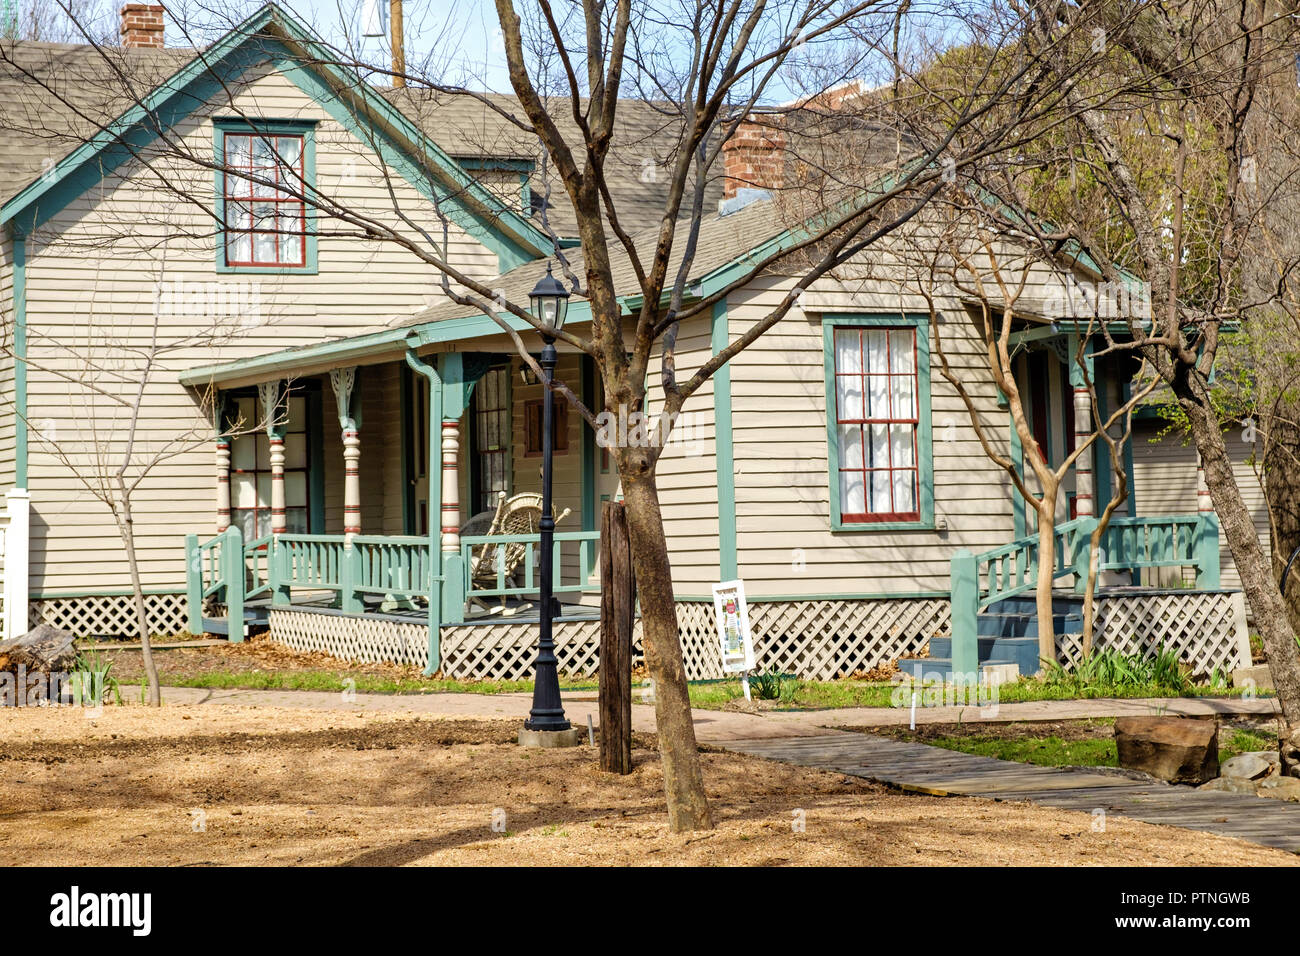 Casa antigua shingled blanco con ribete azul. Los árboles, en posición horizontal. El Dulaney Cottage, Castaños Square Historic Village, McKinney, Texas. Foto de stock